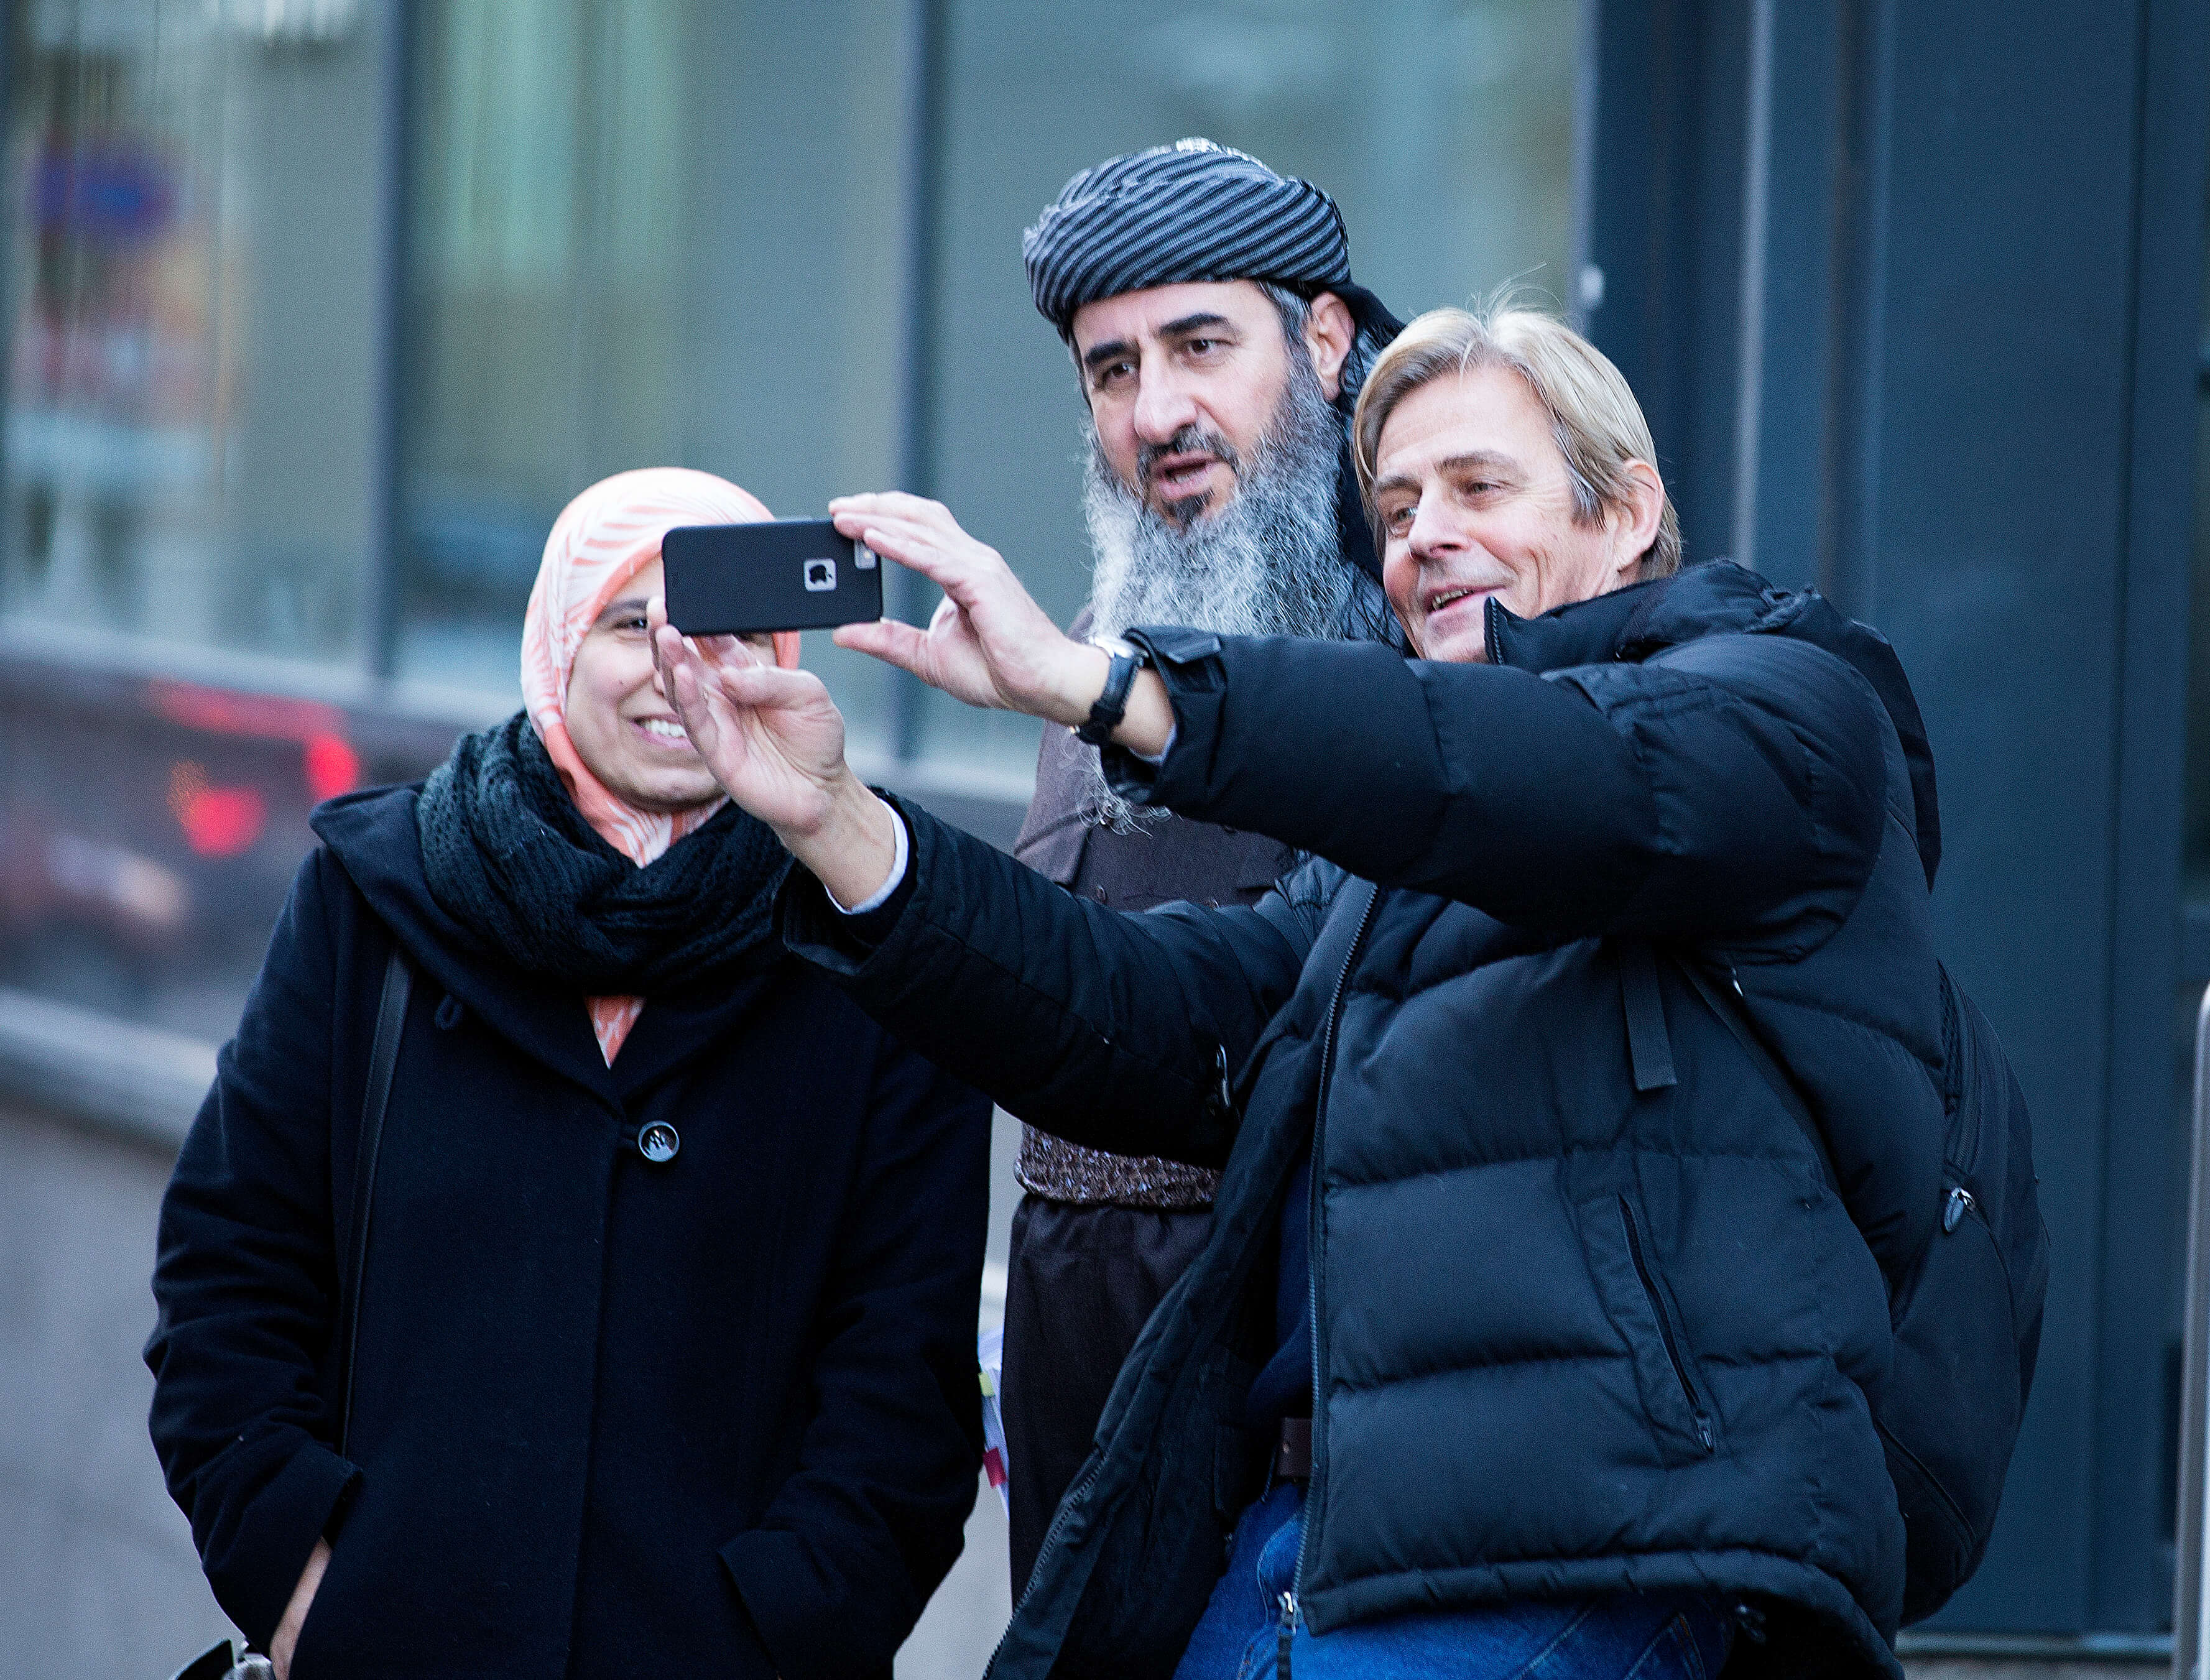 Anders Magnus tar selfie. Fotot är från ett annat tillfälle.